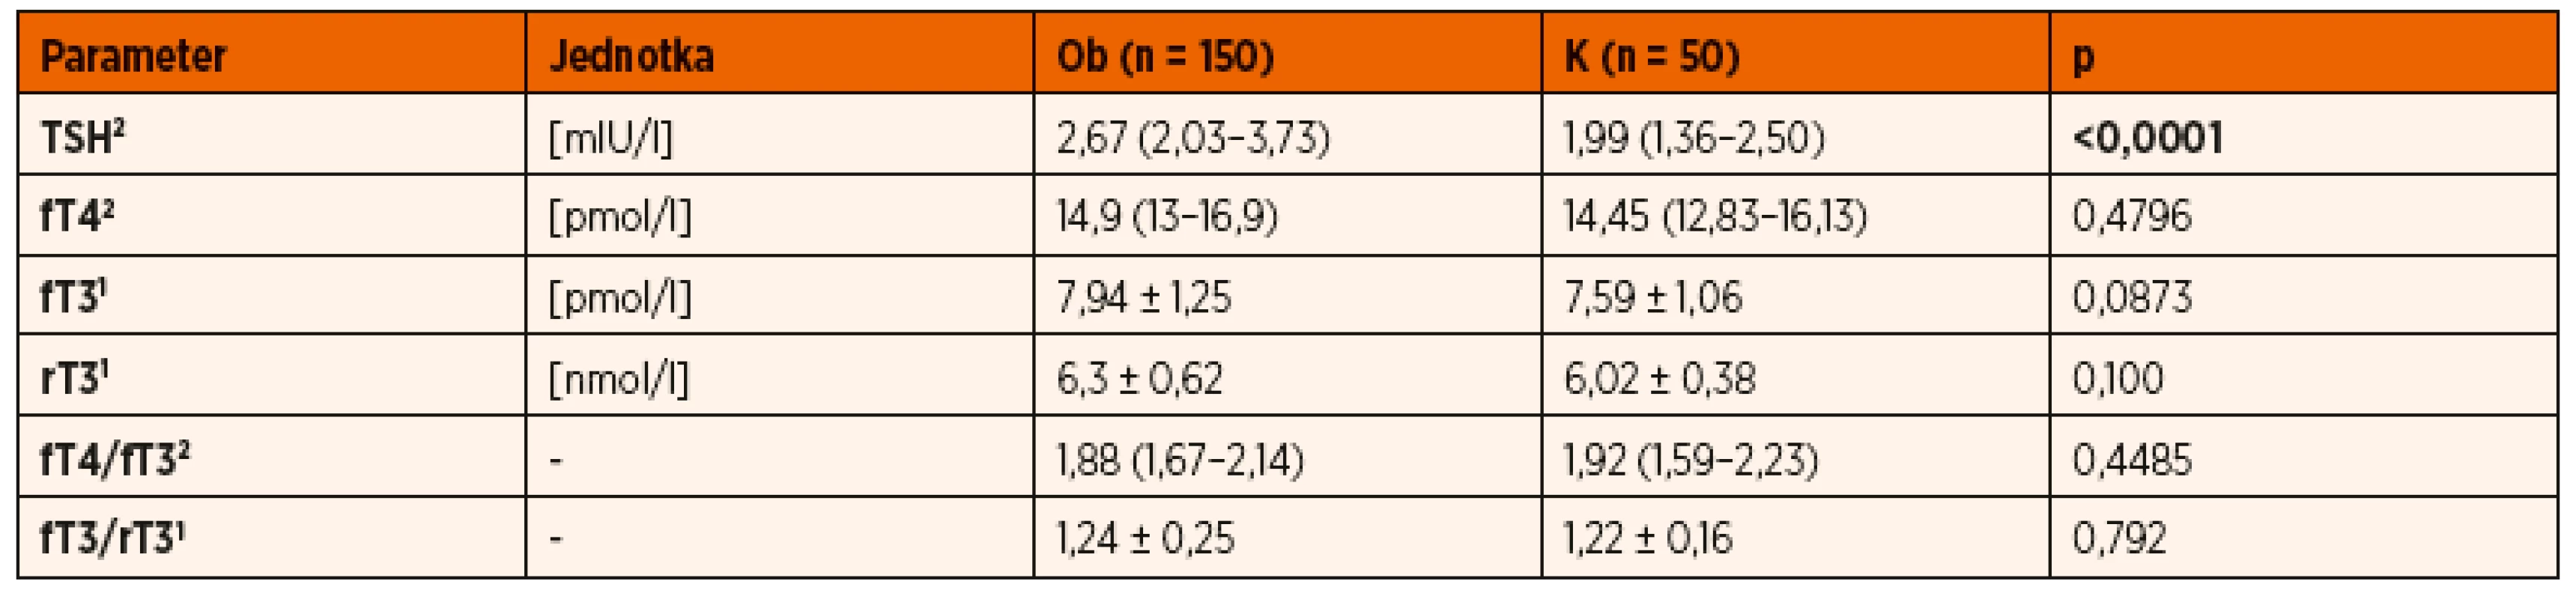 Porovnanie hormónov štítnej žľazy obéznych detí (Ob) s kontrolným súborom (K)